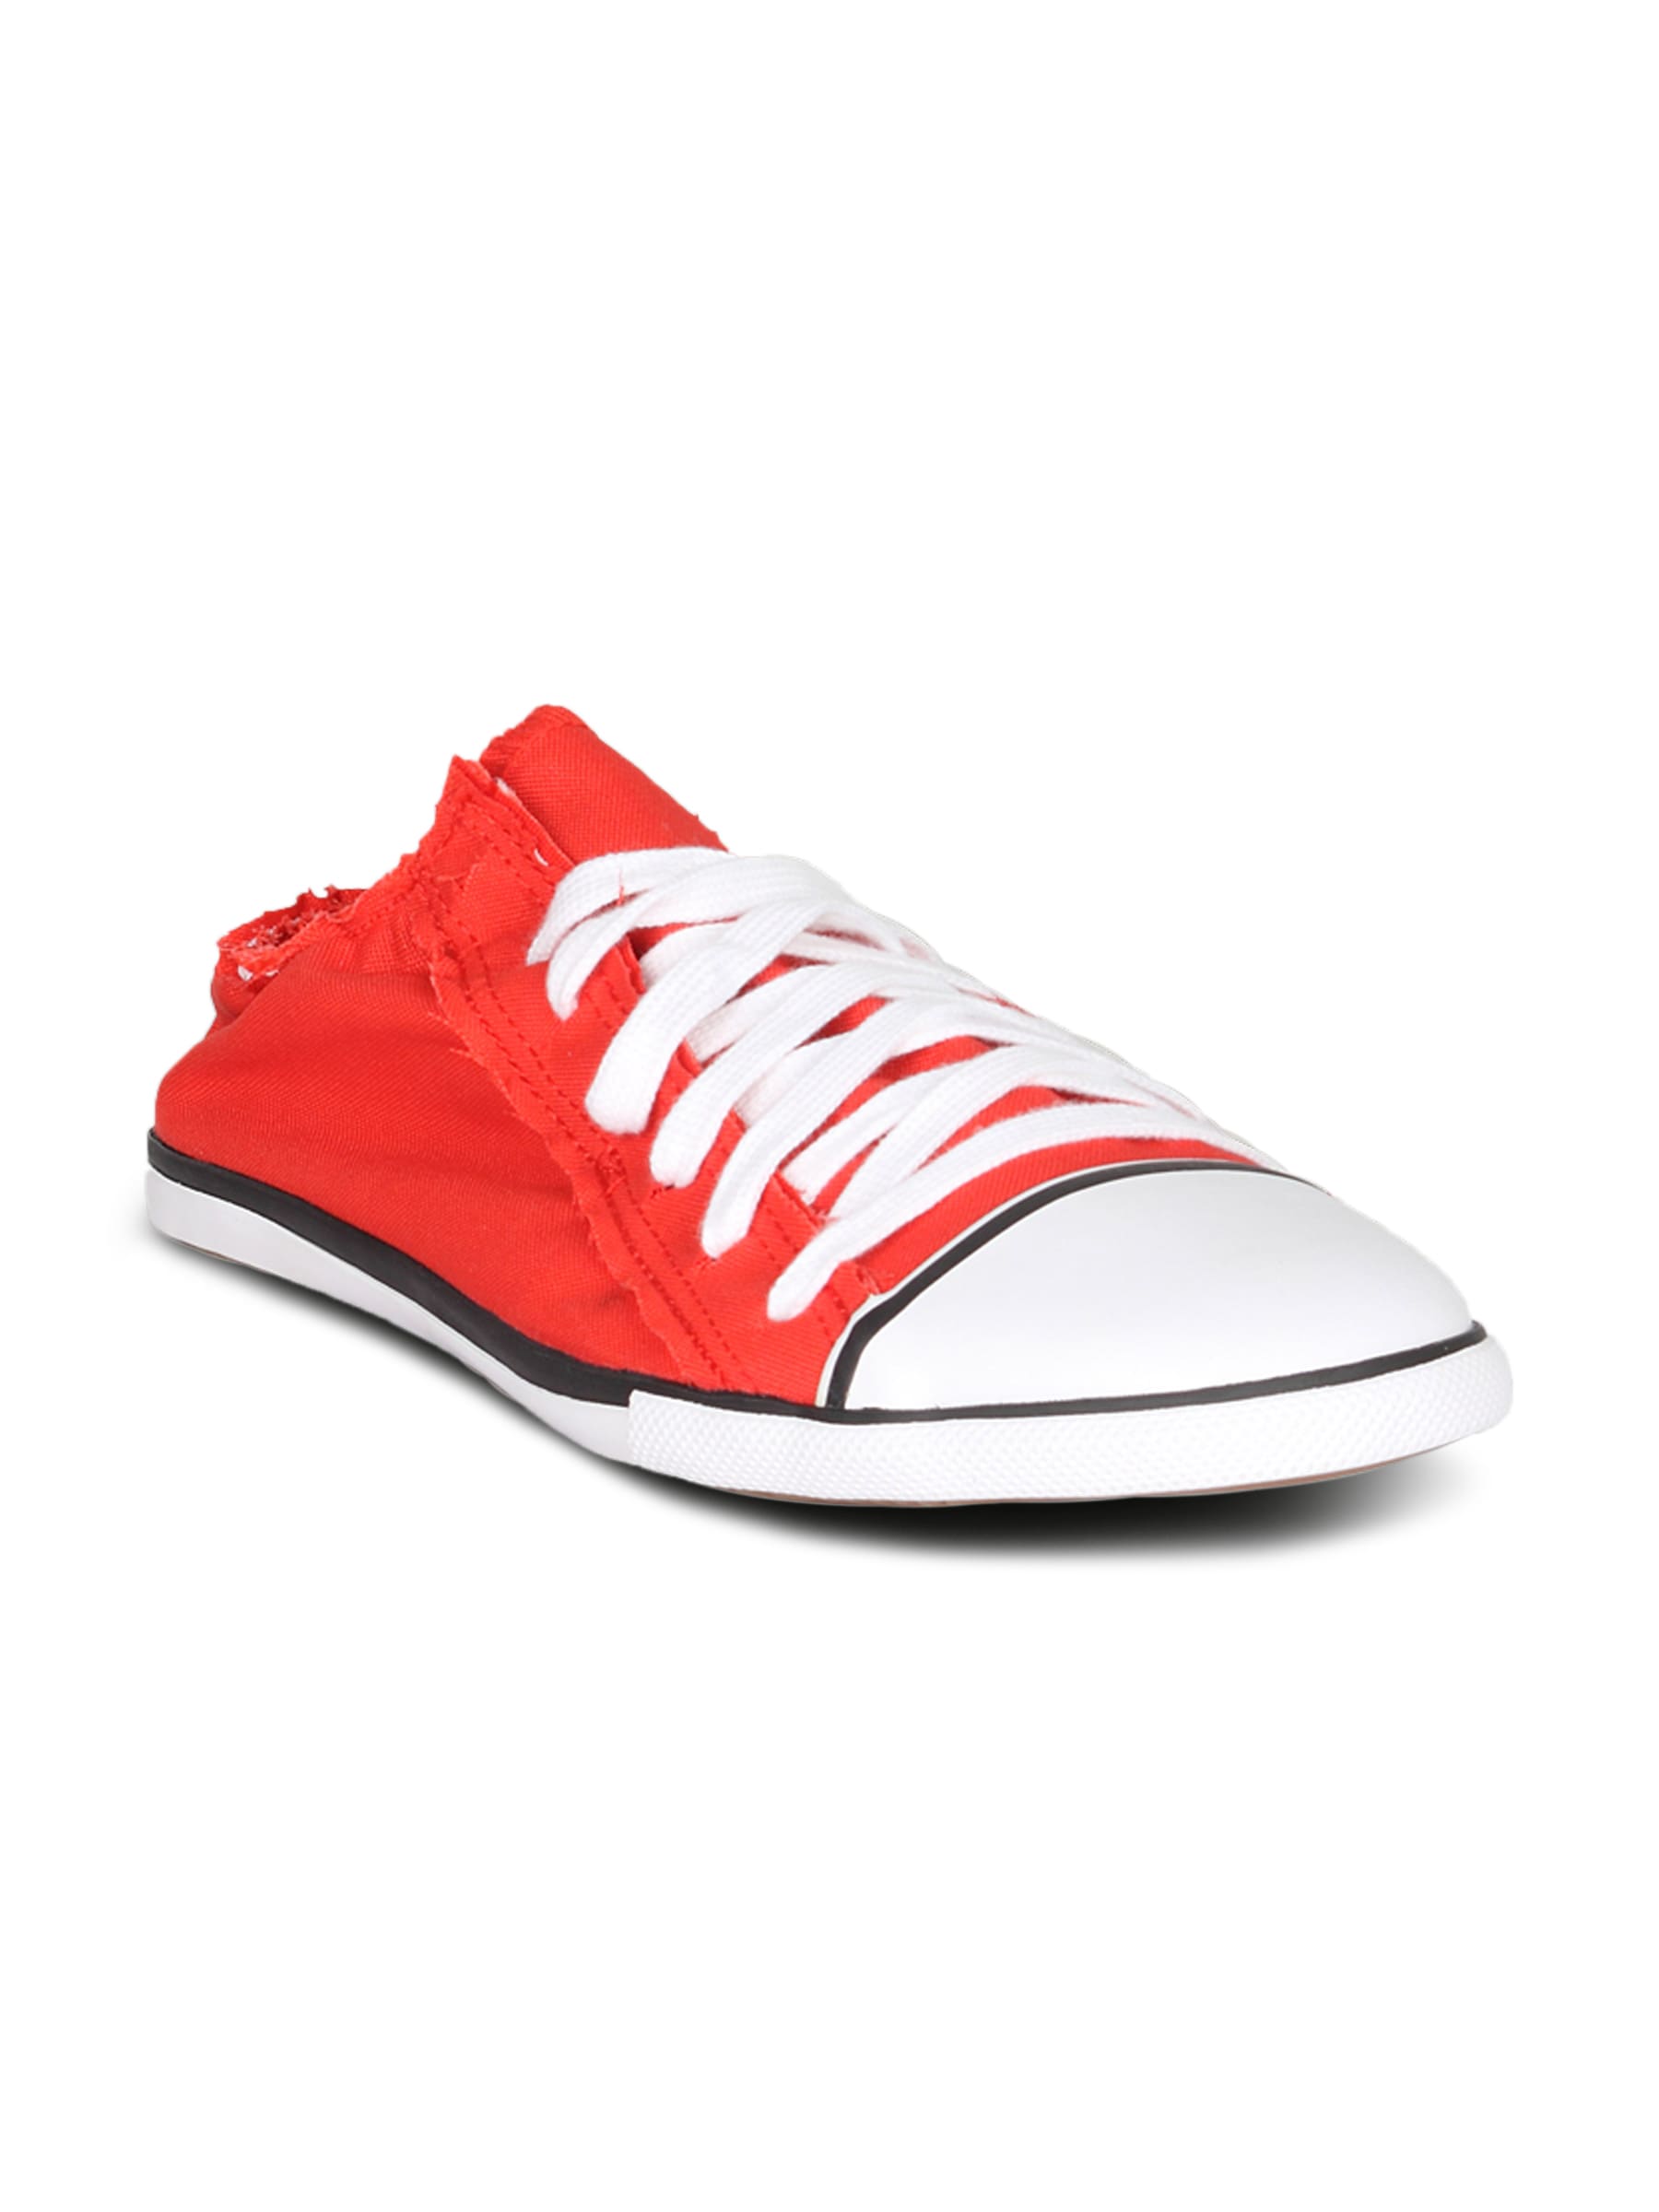 Puma Unisex Scrunch Red Shoe